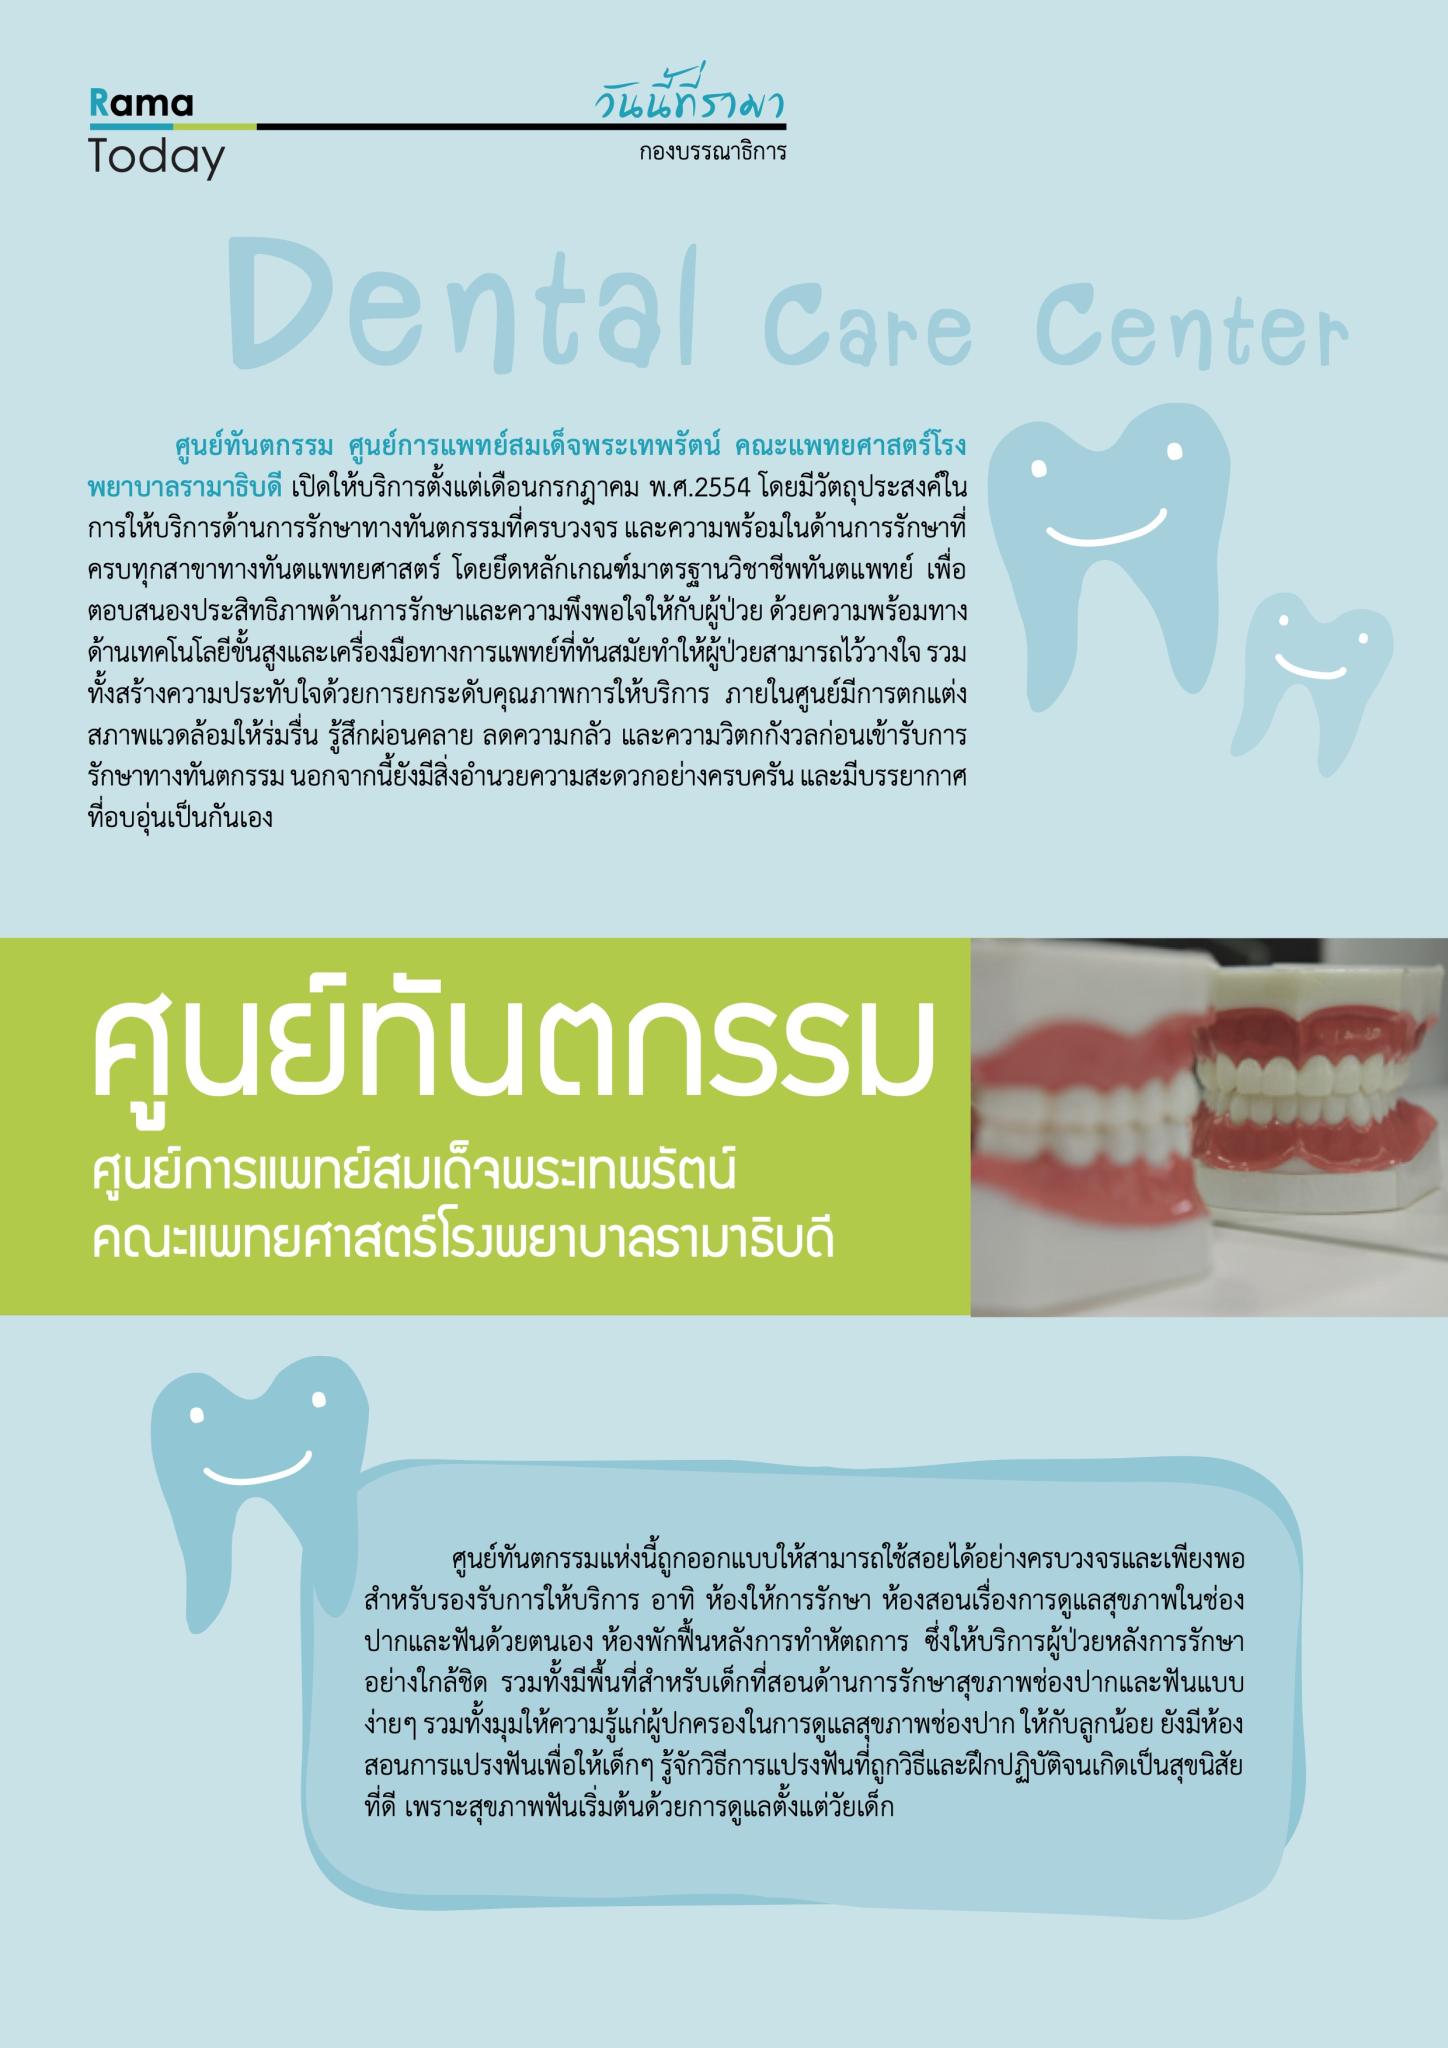 ศูนย์ทันตกรรม (Dental Care Center)